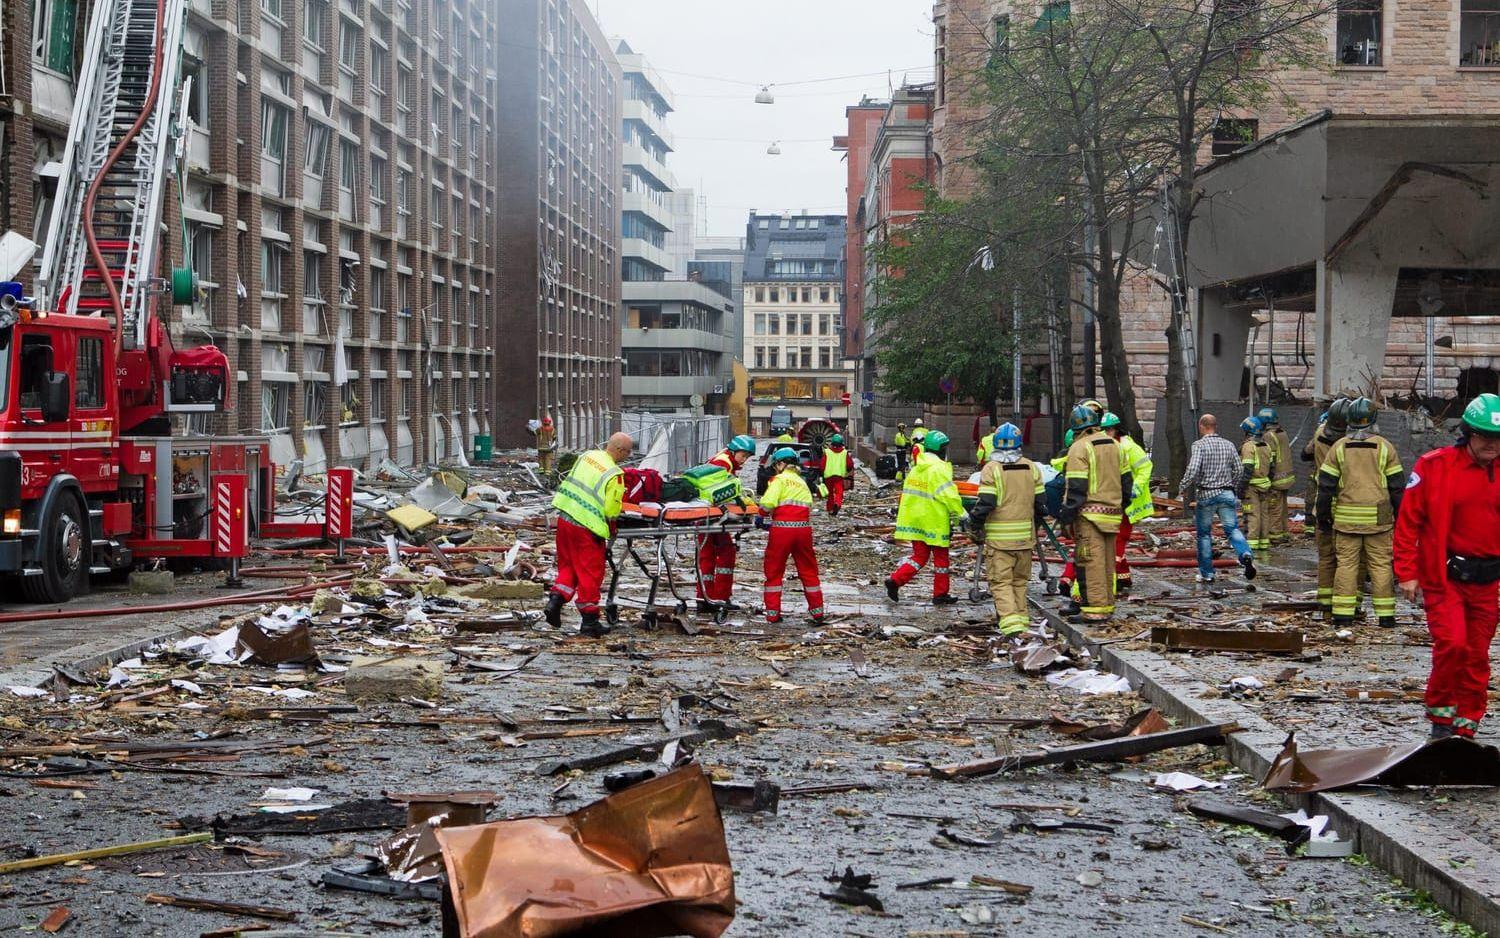 Åtta dog av bomben i Oslo för fem år sedan – och ett par timmar senare blev tragedin ännu mycket större. Bild: Berit Roald, Scanpix Norge